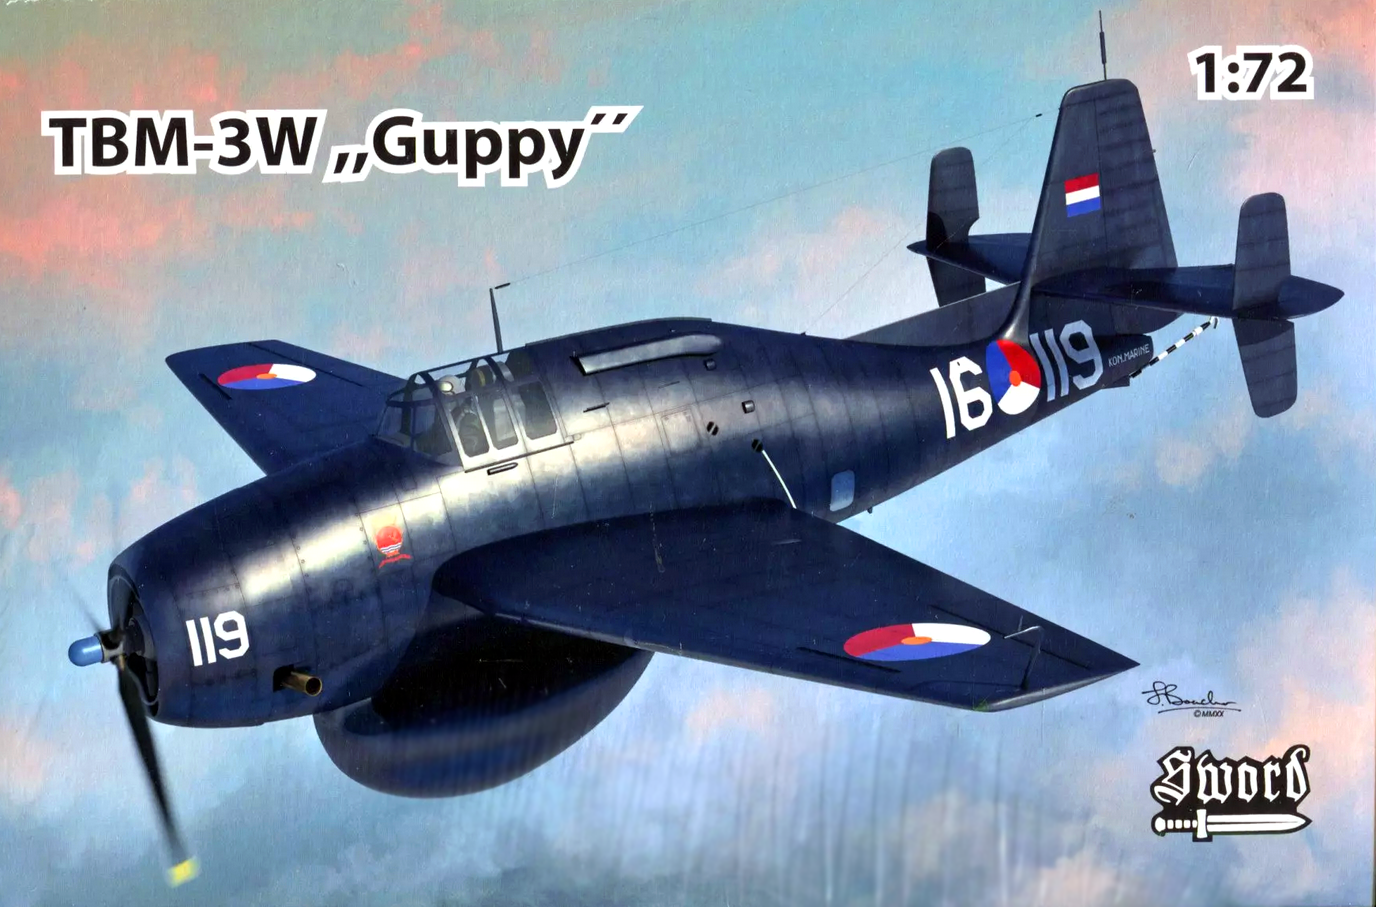 Grumman TBM-3W "Guppy" - SWORD MODELS 1/72